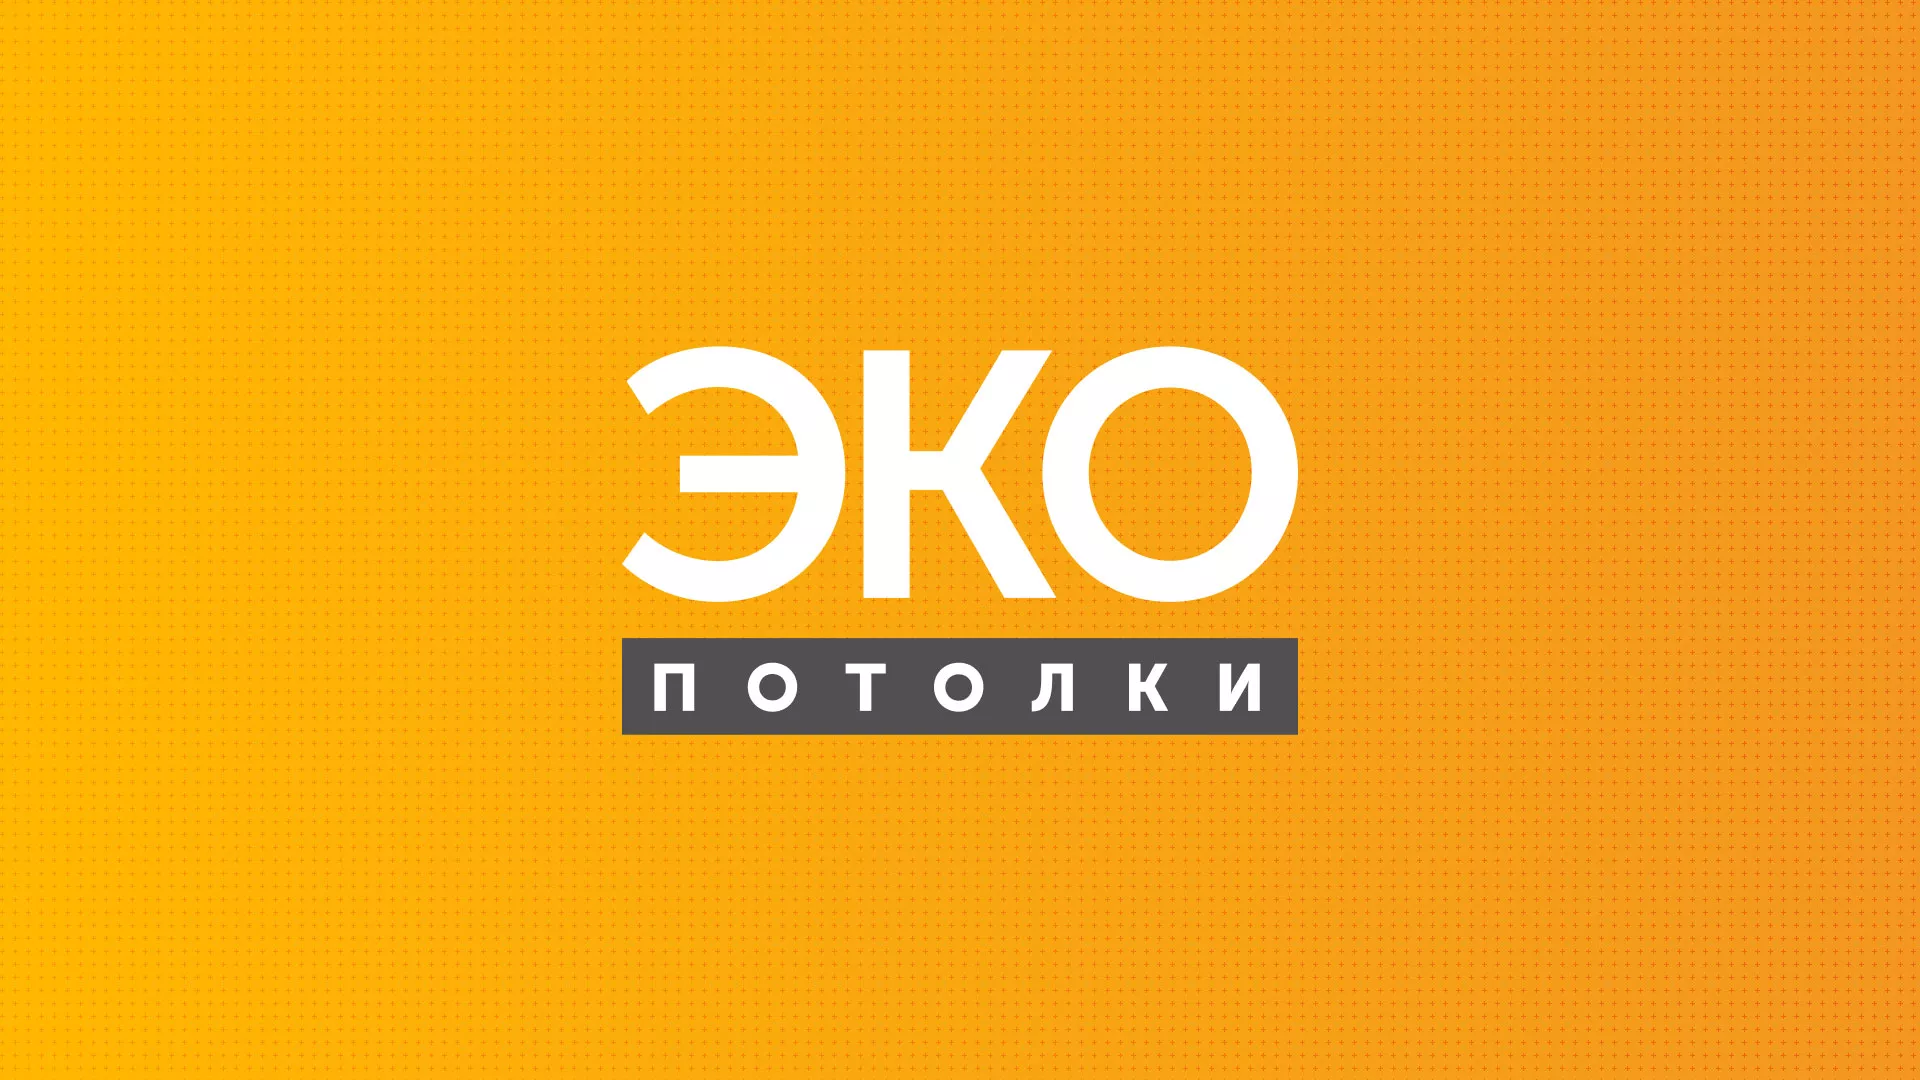 Разработка сайта по натяжным потолкам «Эко Потолки» в Калининске